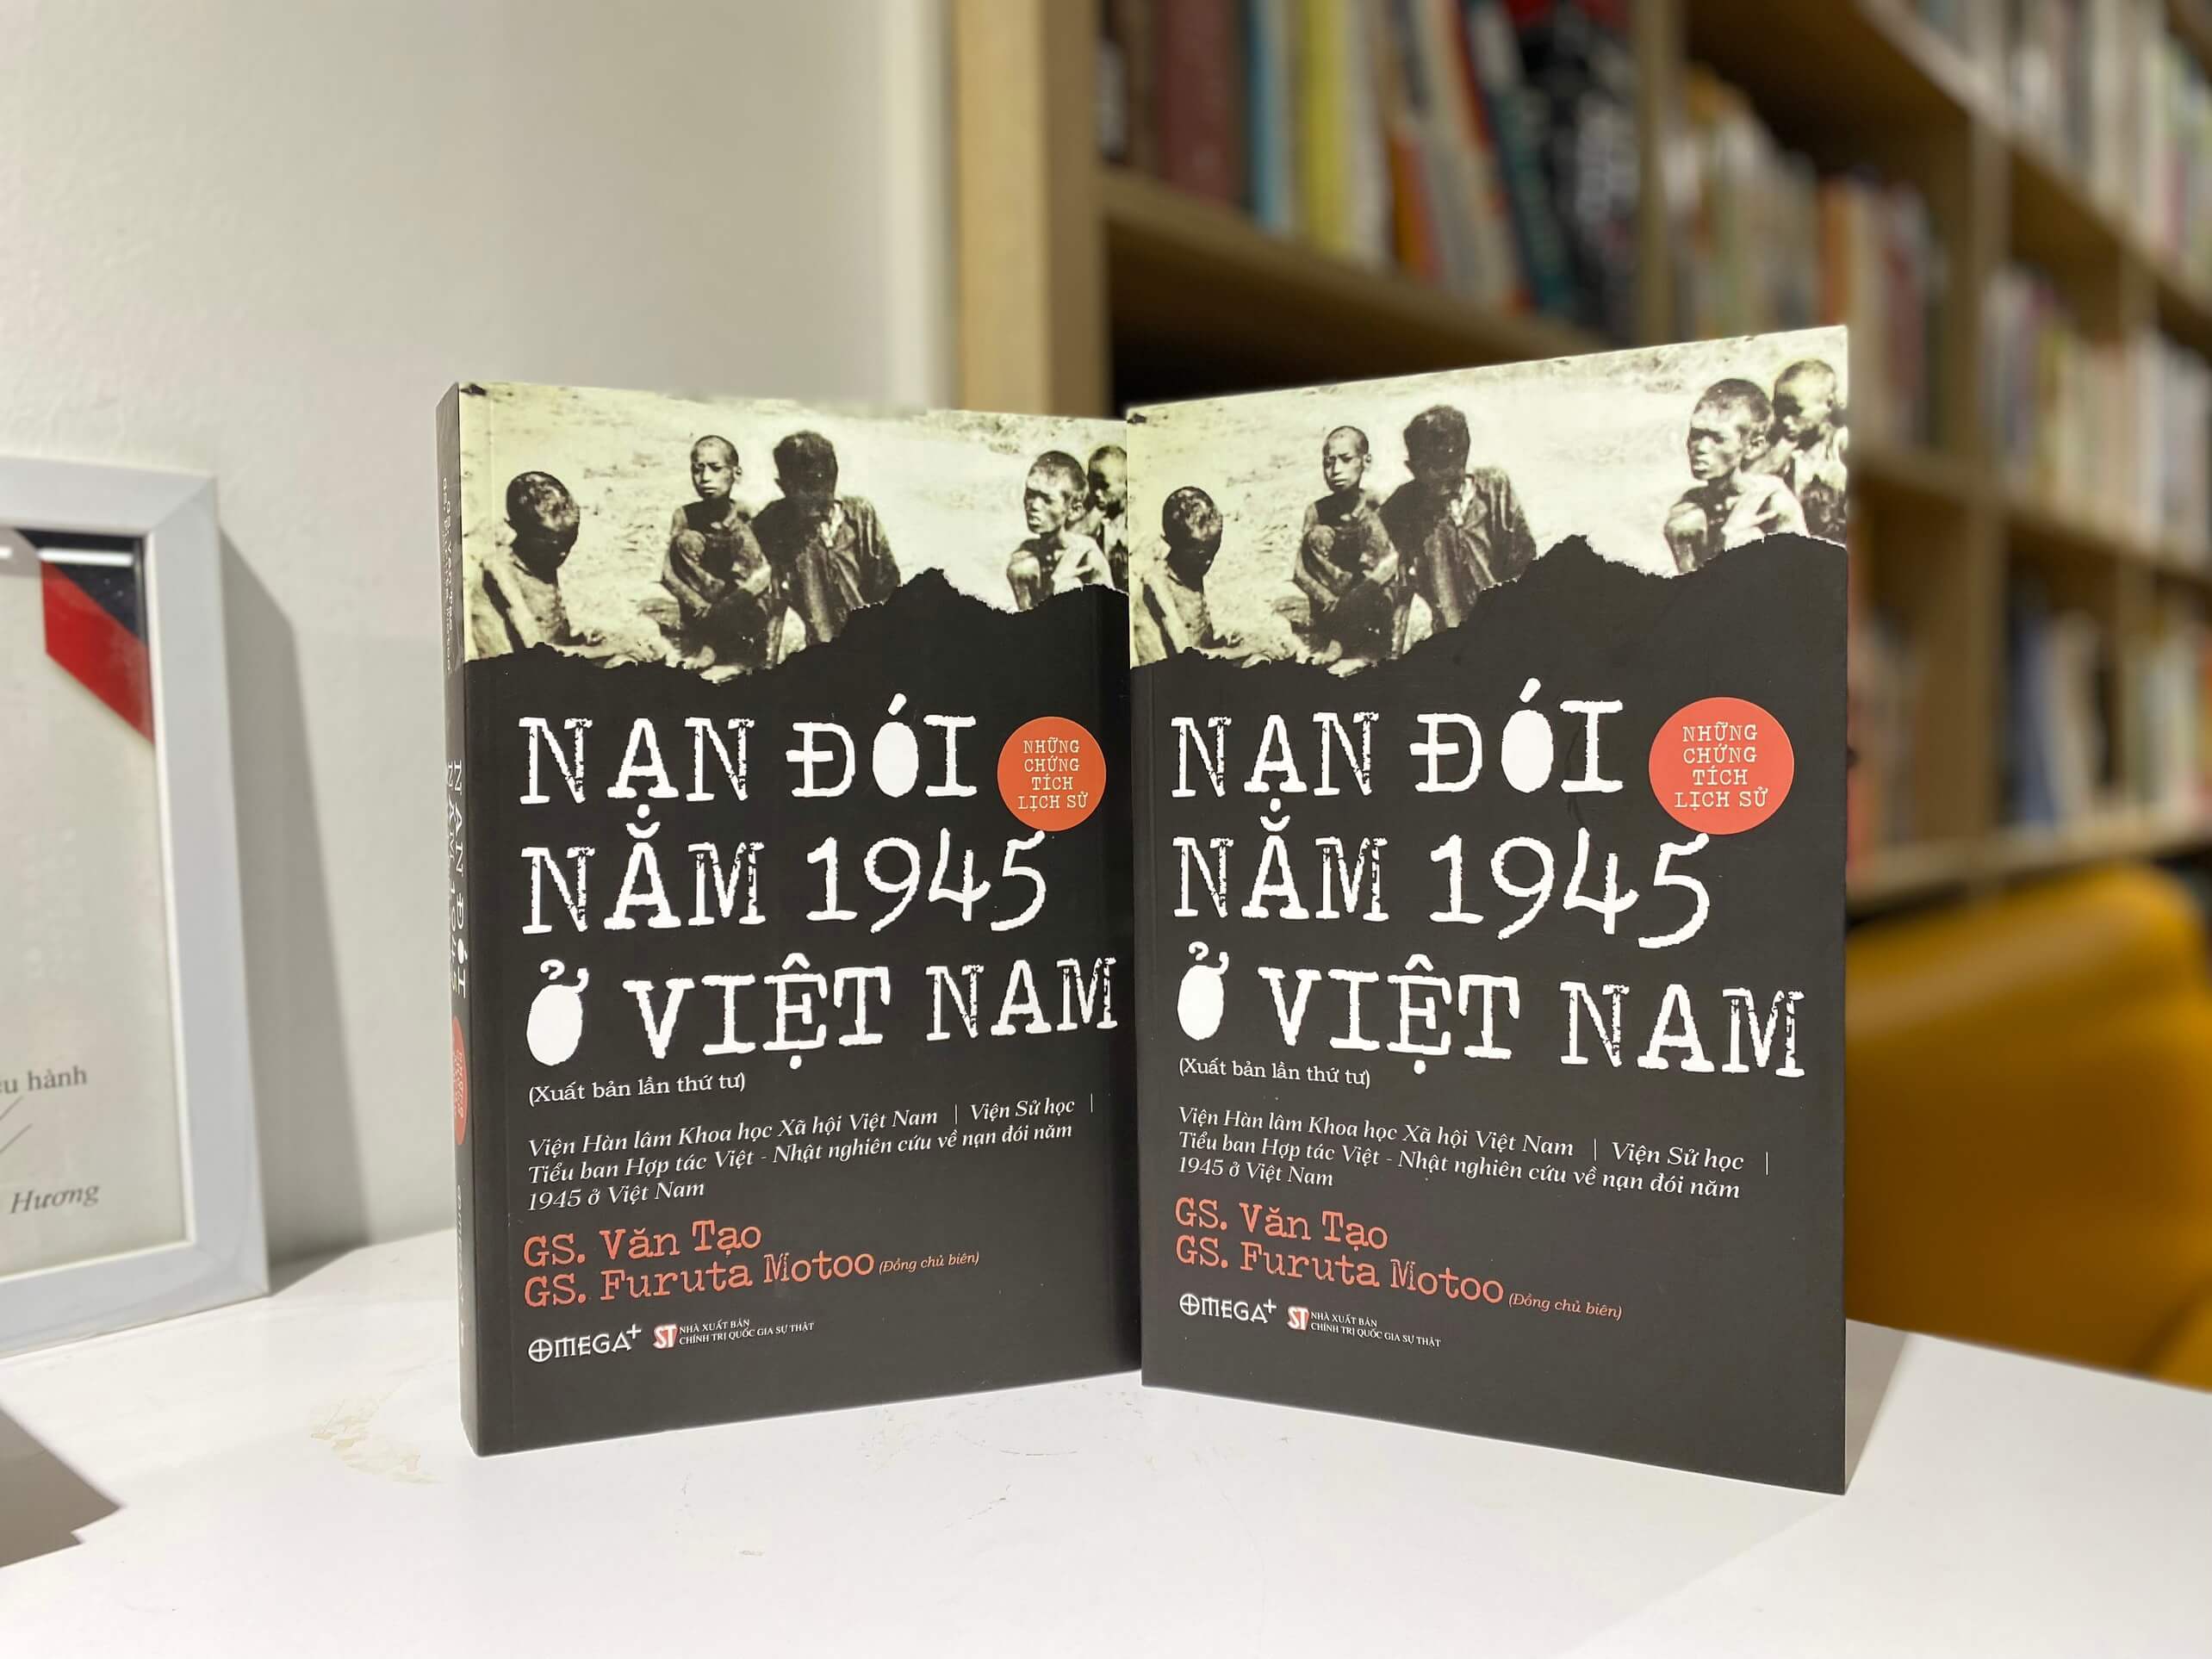 Nan doi nam 1945 o Viet Nam anh 1